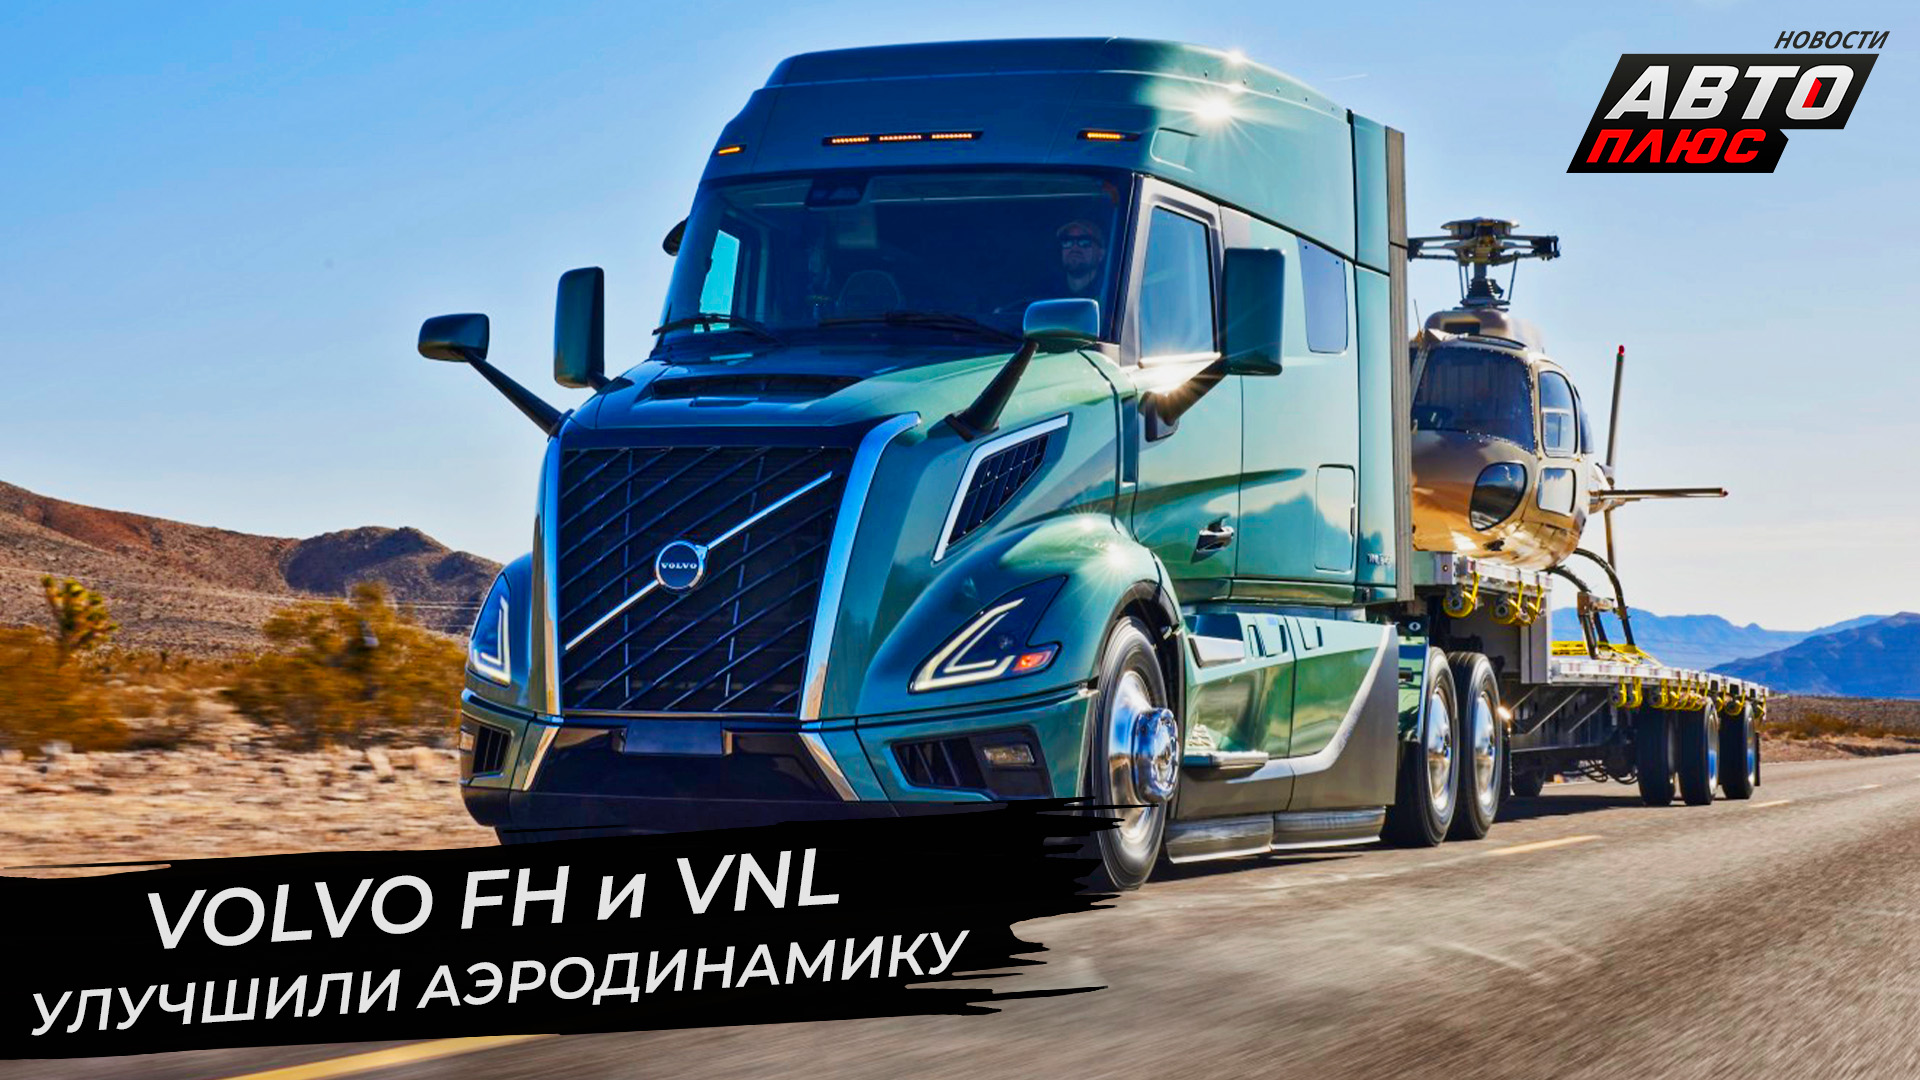 Volvo FH Aero повторил опыт марки DAF. Volvo VNL сменил поколение ? Новости с колёс №2810